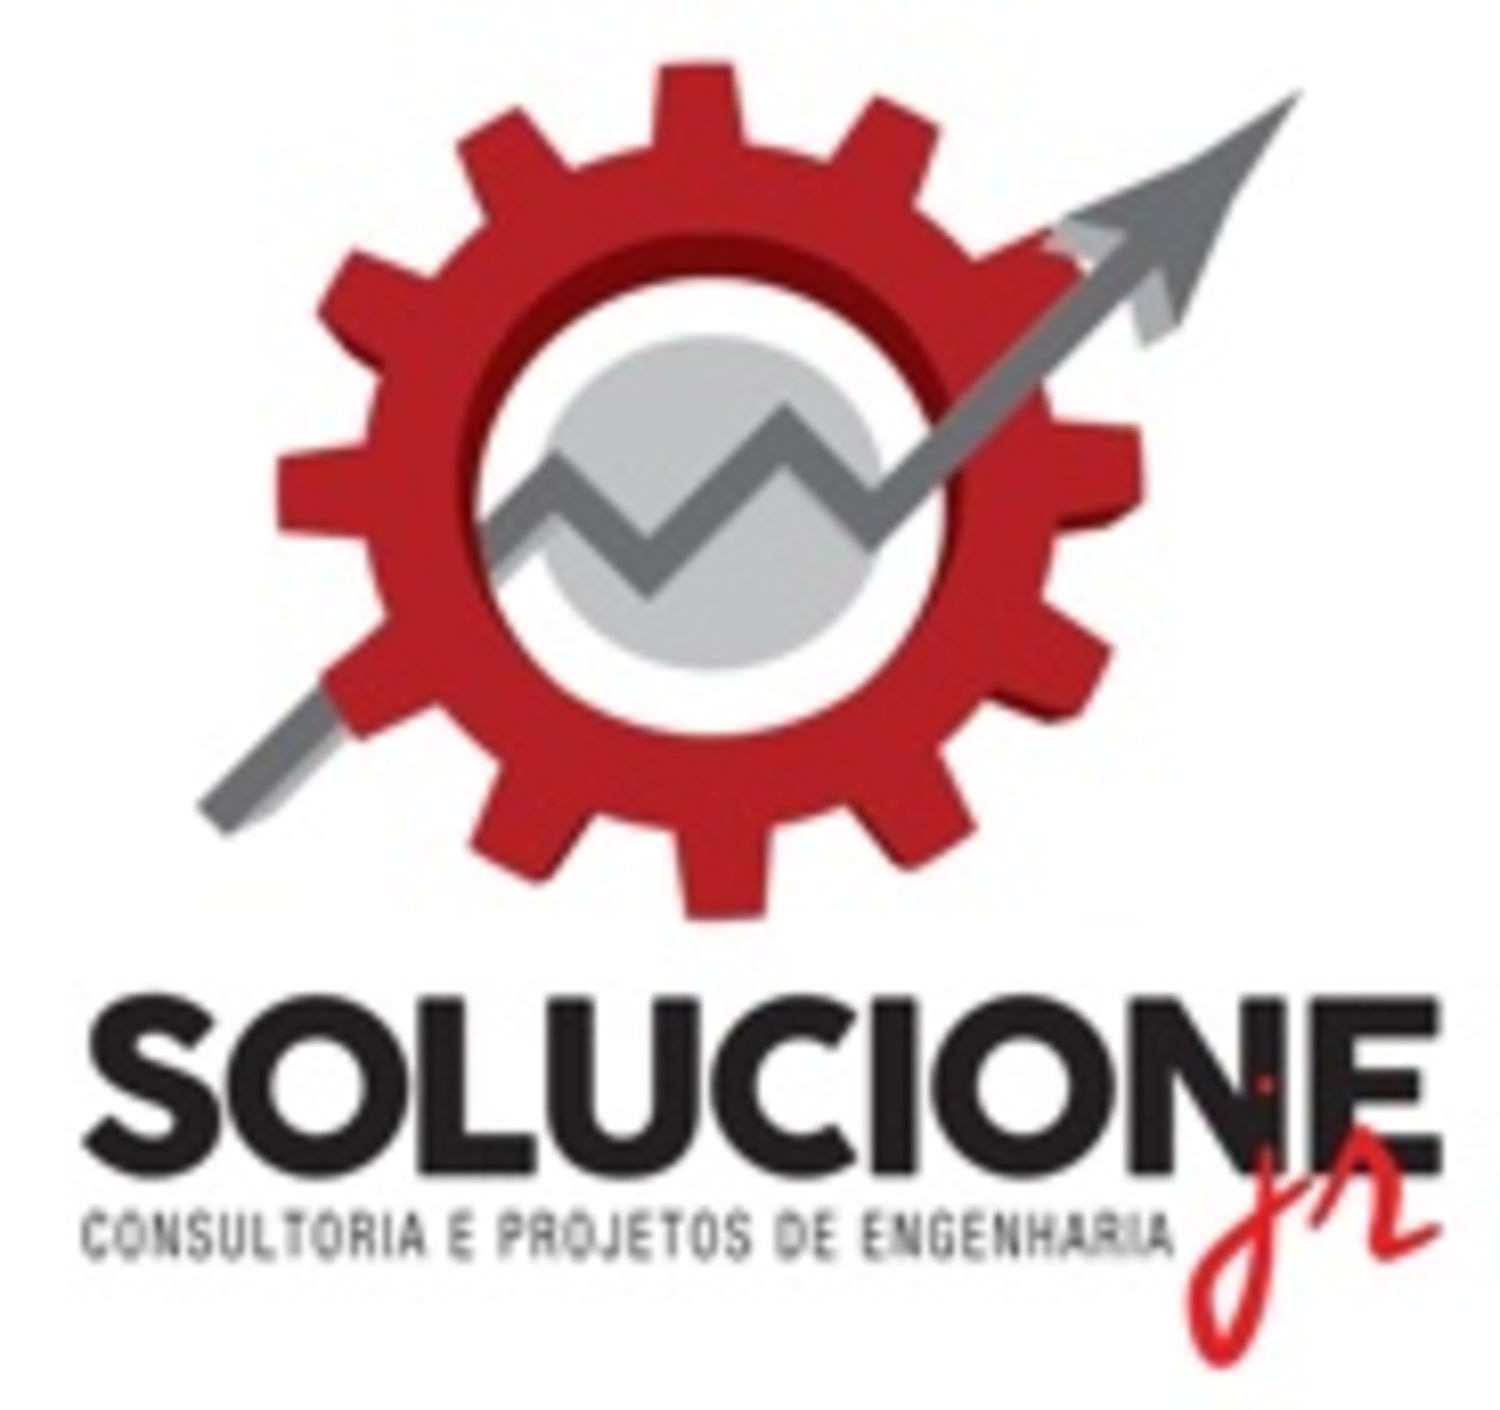 Solucione Jr. - Consultoria e Projetos de Engenharia 